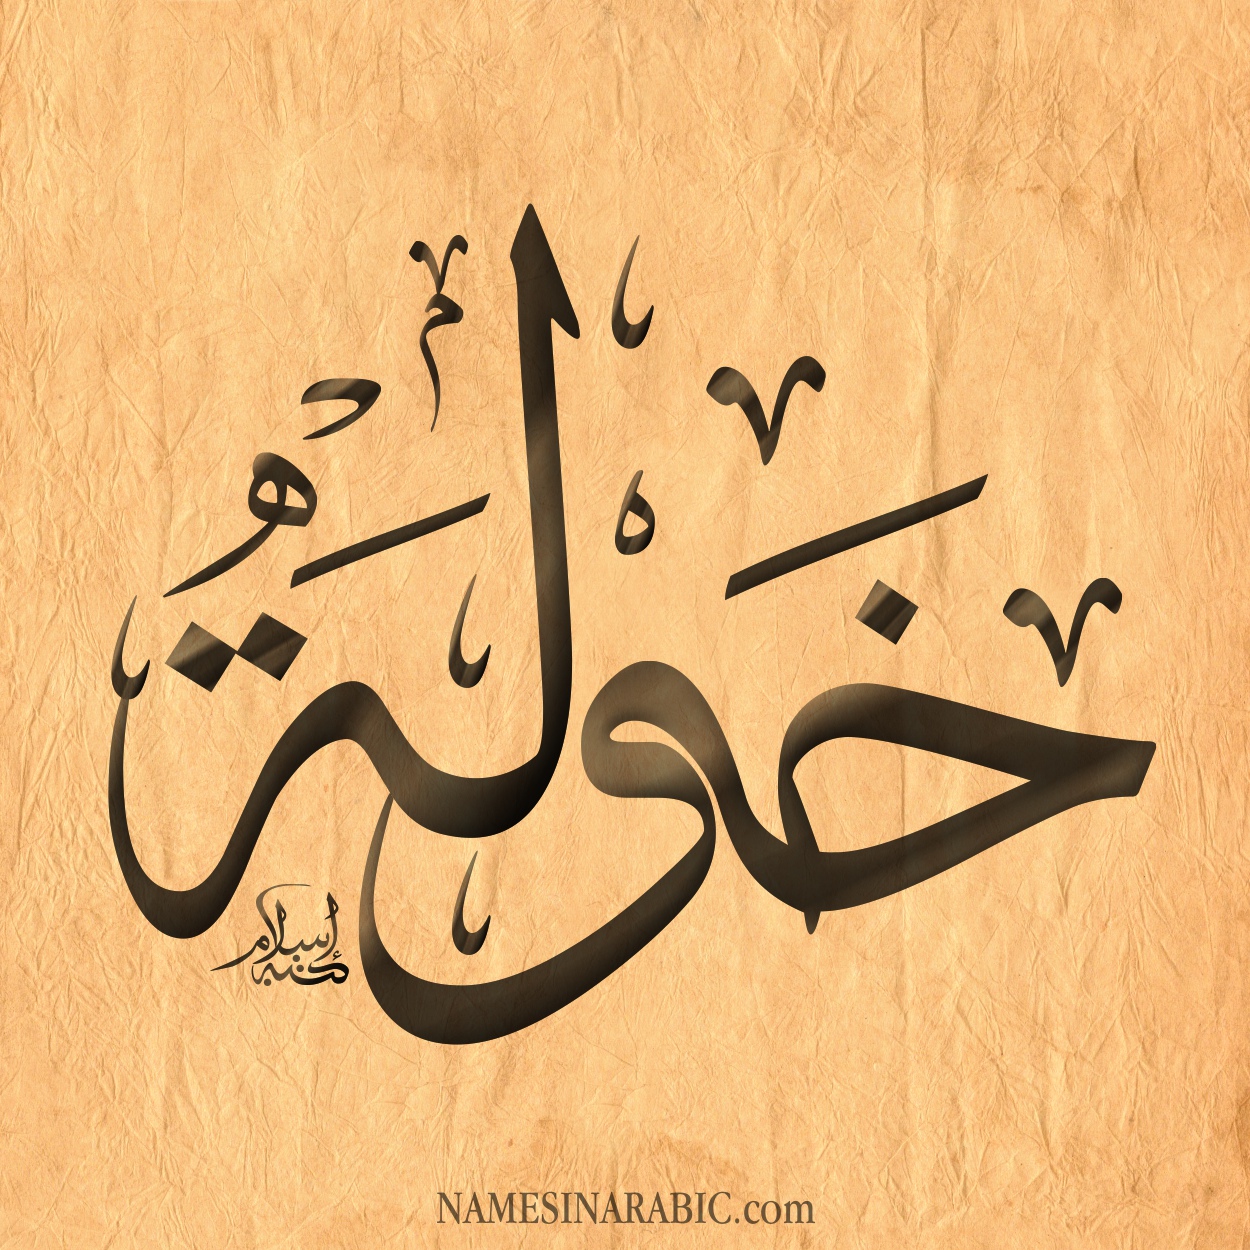 14 на арабском. Любовь на арабском языке. Исса на арабском. Картины на арабском языке своими руками.